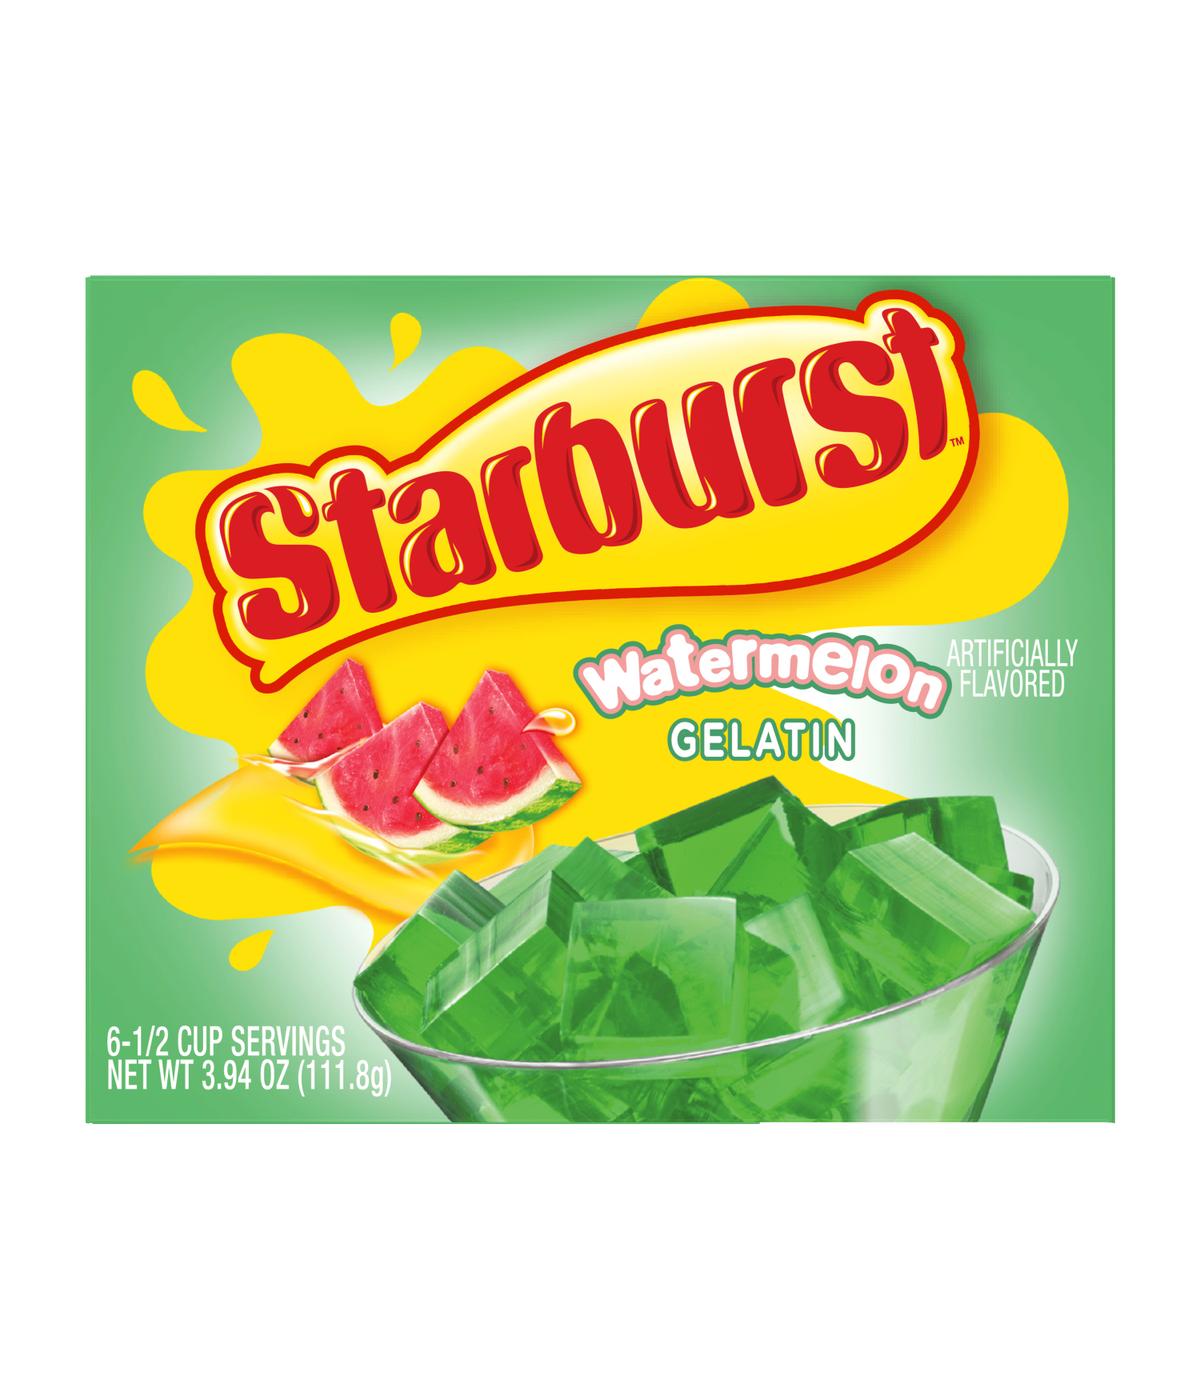 Starburst Gelatin - Watermelon; image 1 of 4